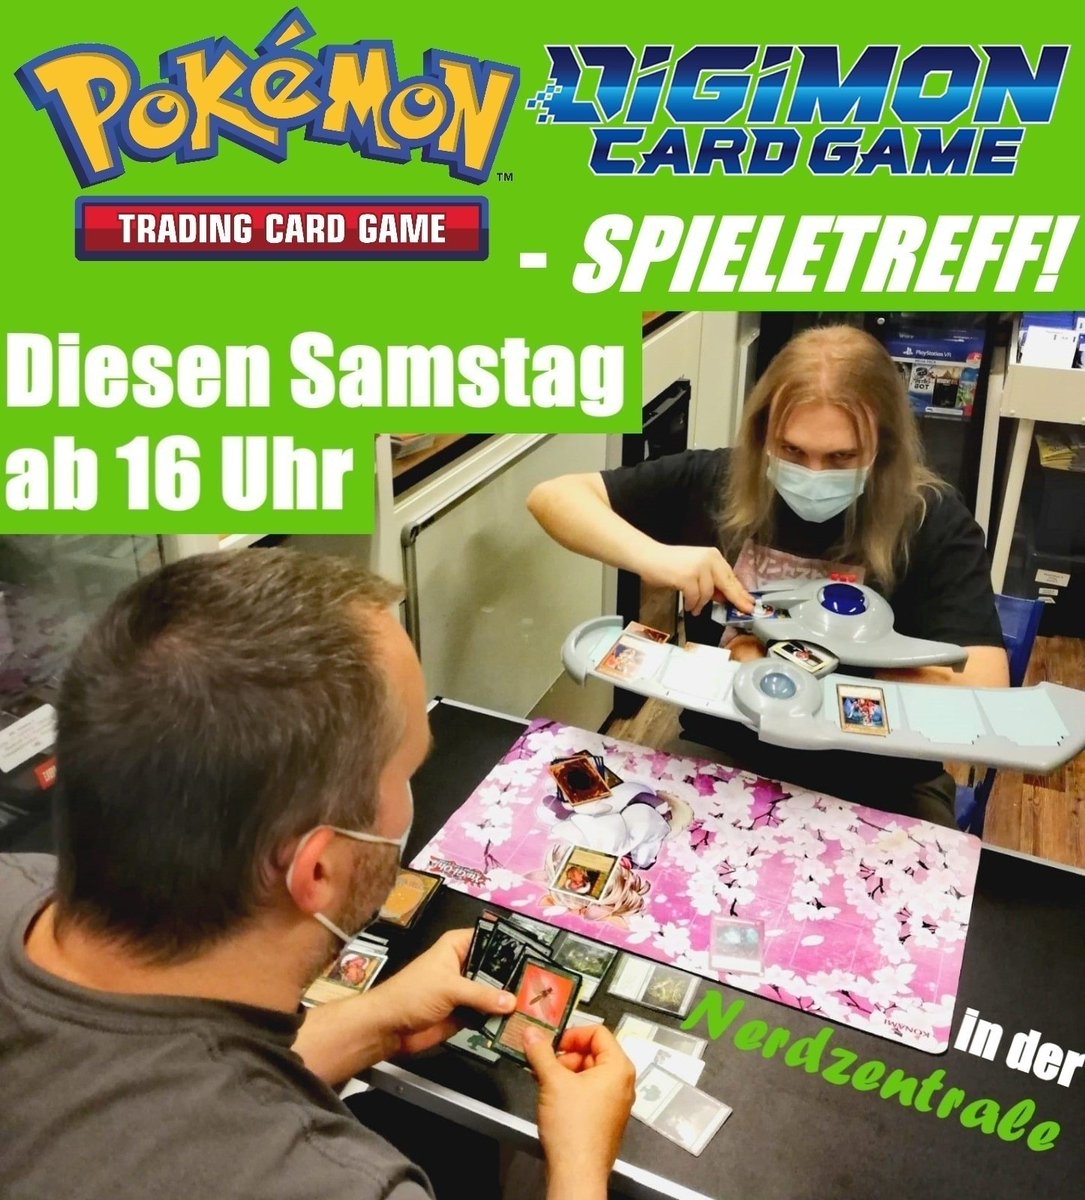 Am Samstag spielen wir wieder Pokémon. Kommt gerne ab 16 Uhr vorbei. 😊

#Nerdzentrale #Karlsruhe #Pokemon #PokemonTCG #PokemonTradingCardGame #pokemonCards #pokemoncollector